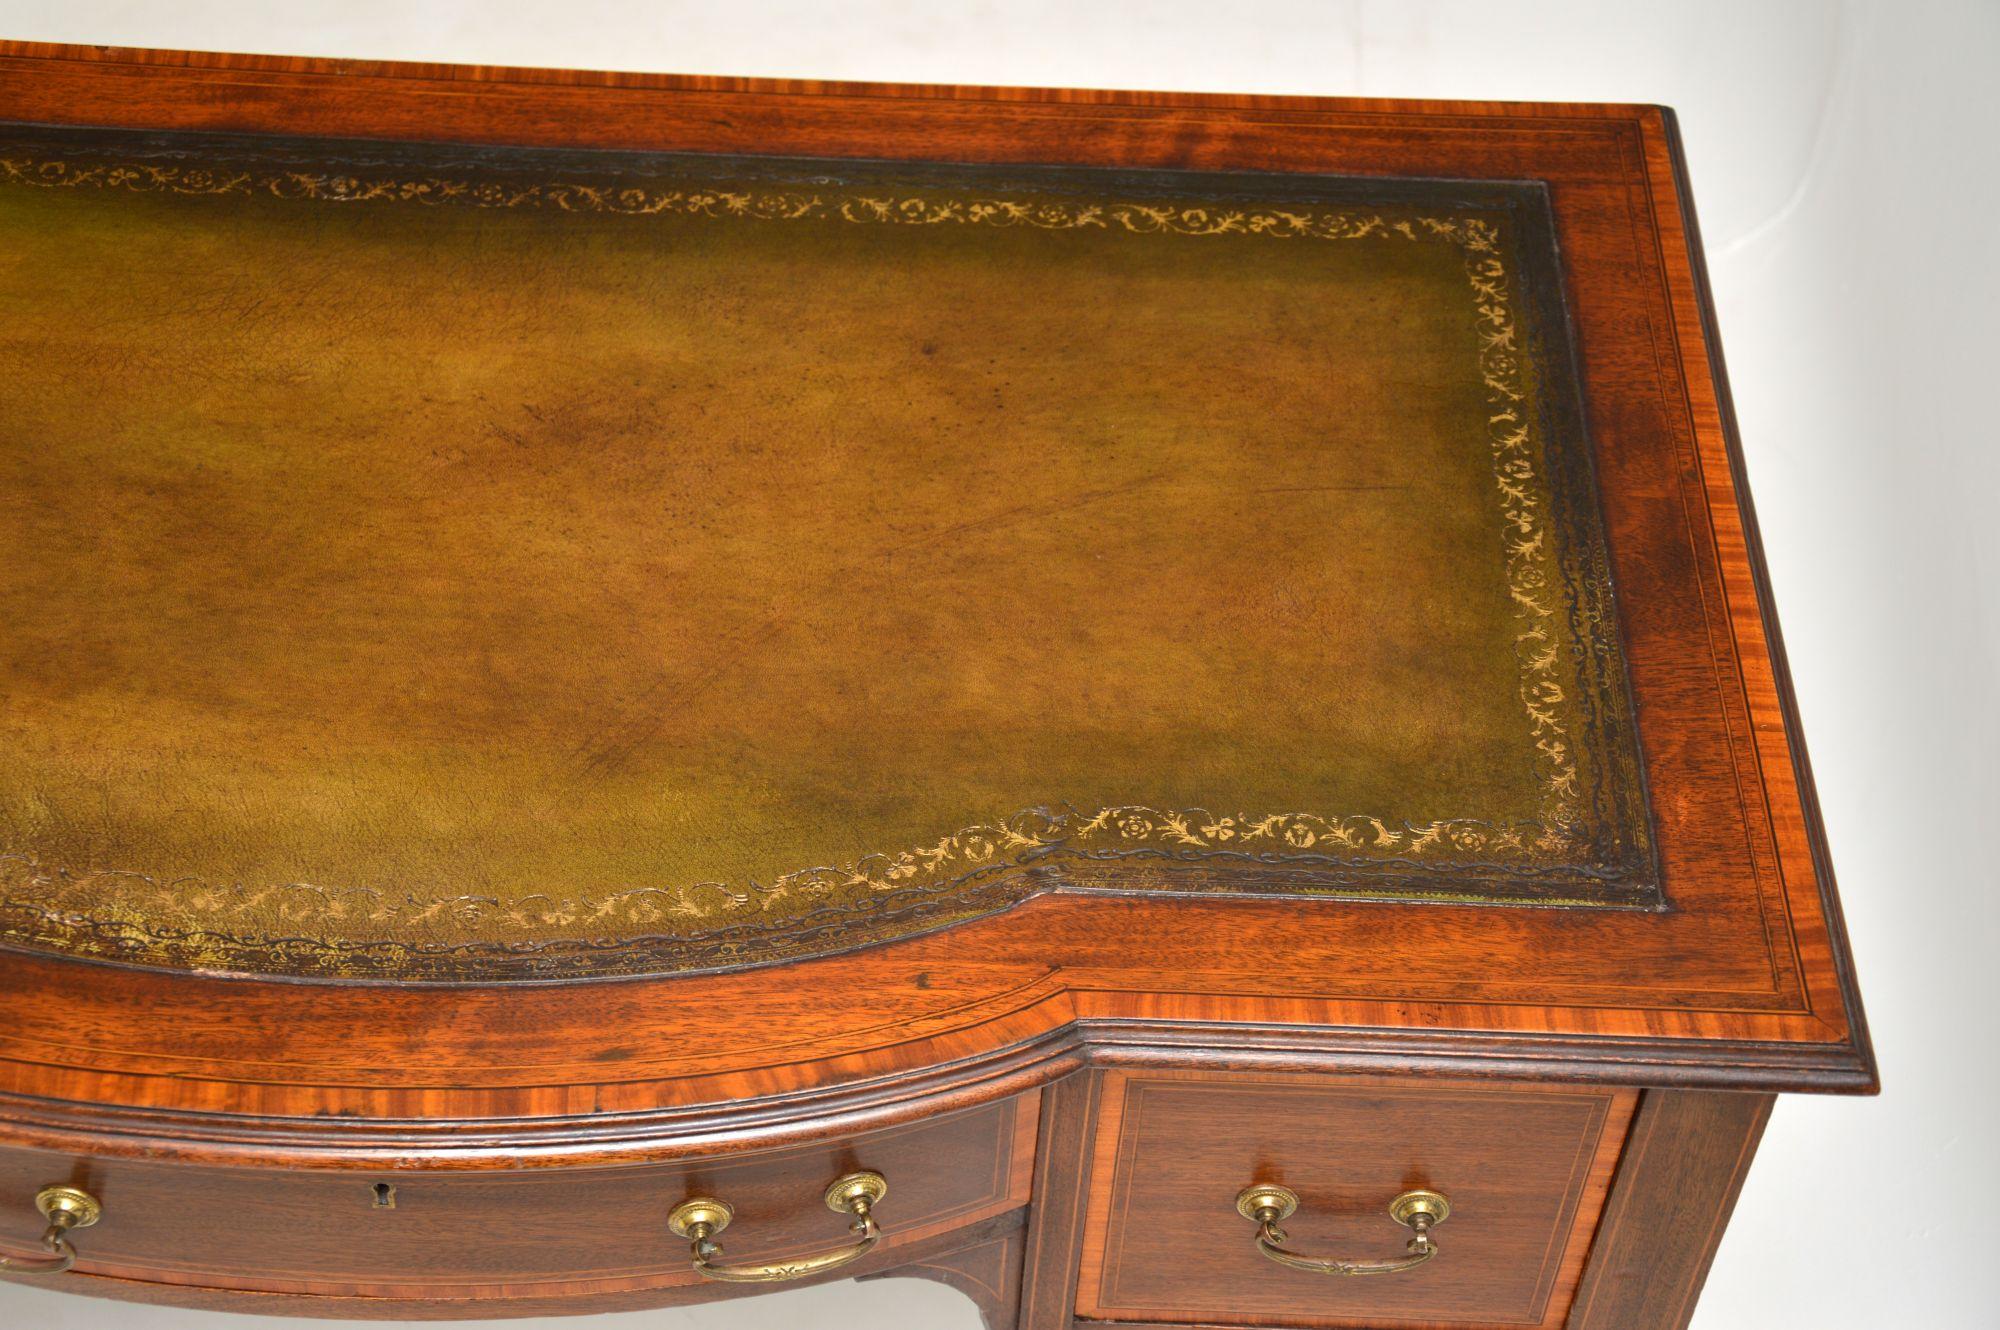 English Antique Edwardian Inlaid Mahogany Desk / Writing Table